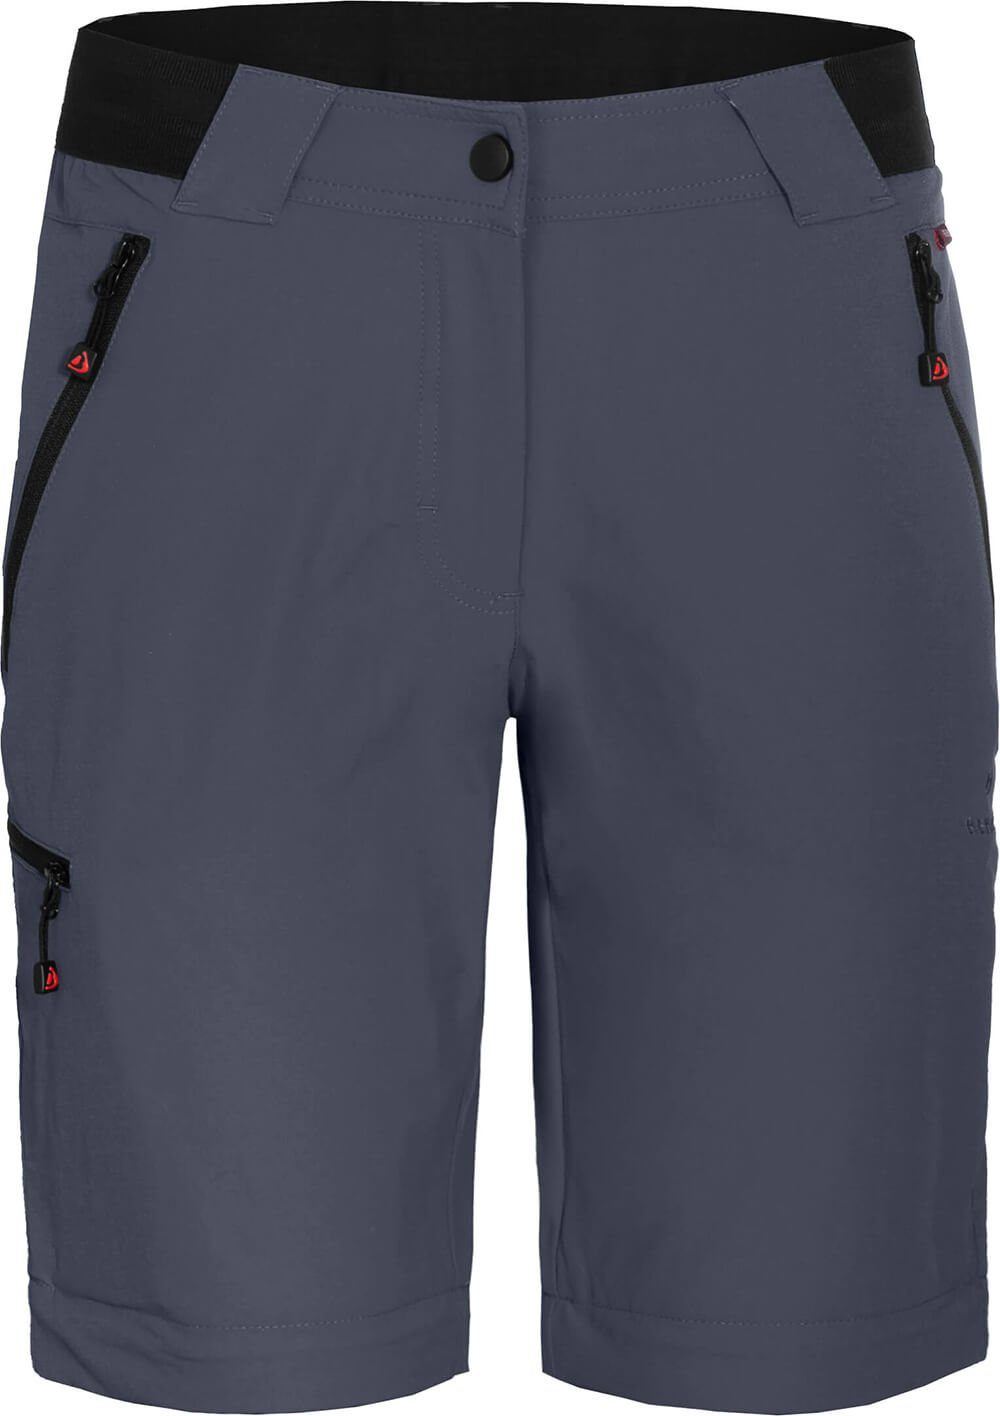 Bergson Zip-off-Hose VIDAA COMFORT strapazierfähig, leicht, Kurzgrößen, Damen grau/blau Wanderhose, Zipp-Off